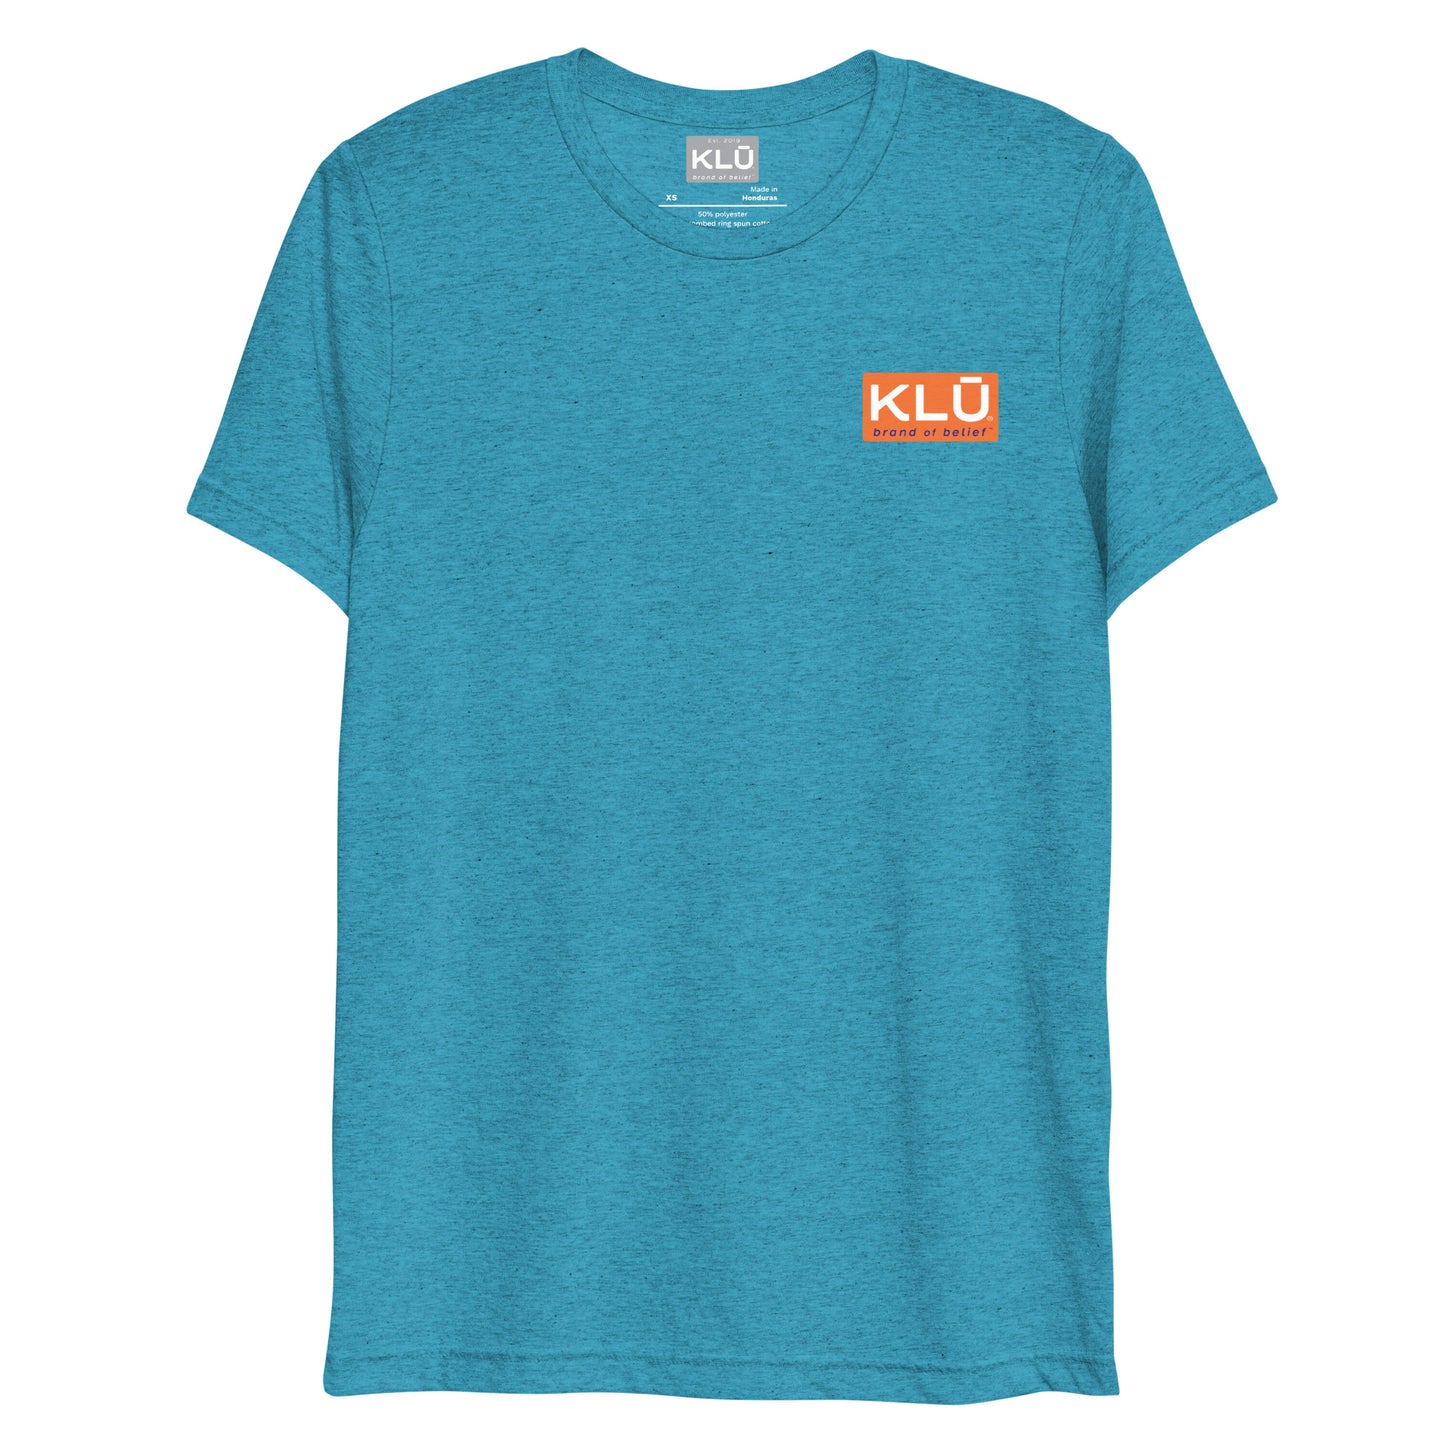 Keep Looking Ūp (vertical) | Unisex | Tri-blend | Short-sleeve T-shirt